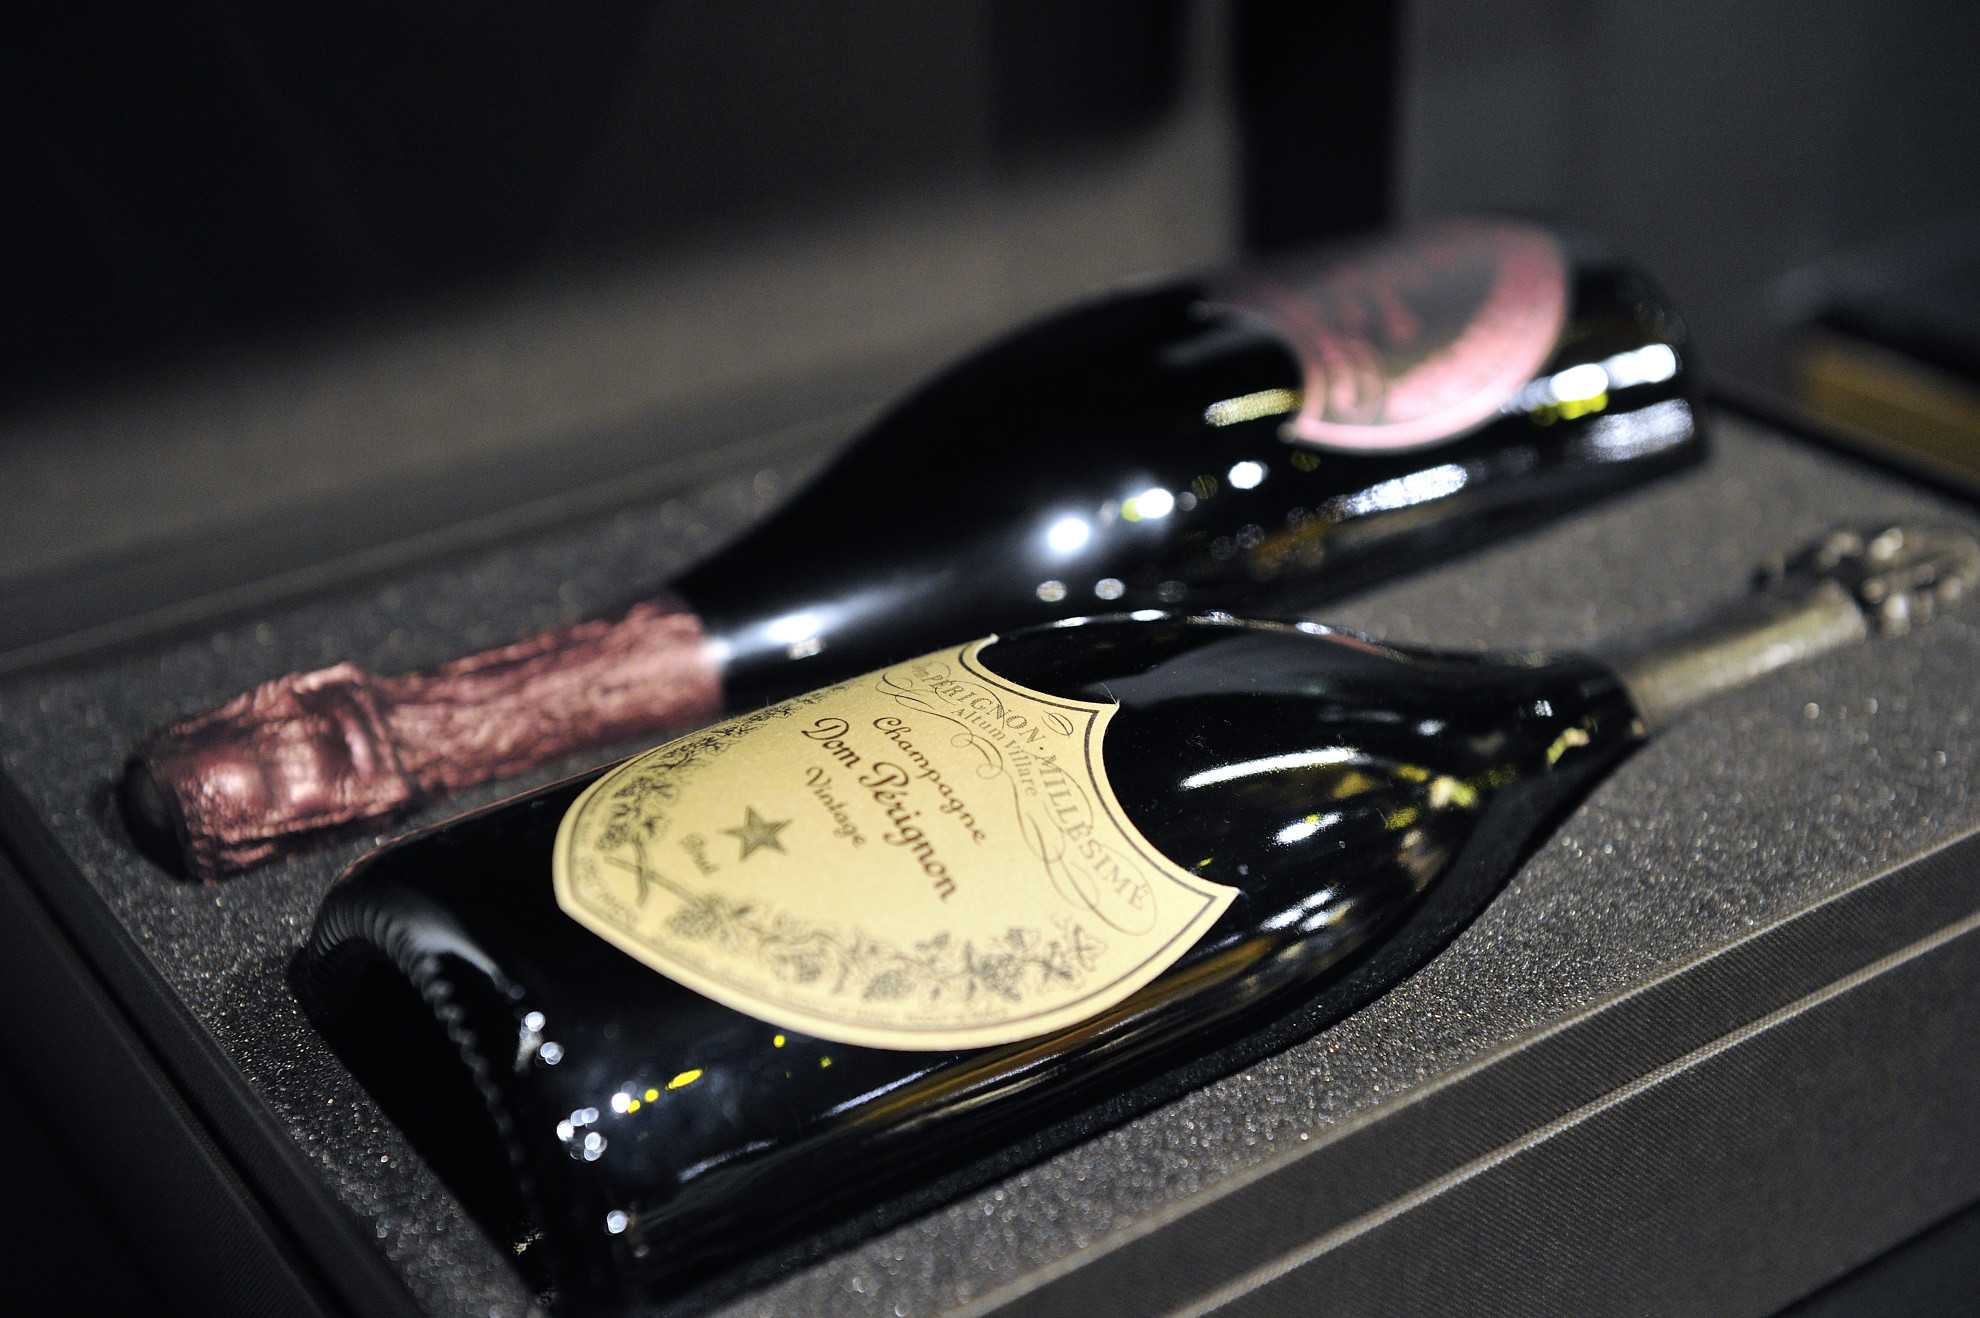 Шампанское "моэт шандон" — история, описание, ассортимент игристого вина moet & chandon